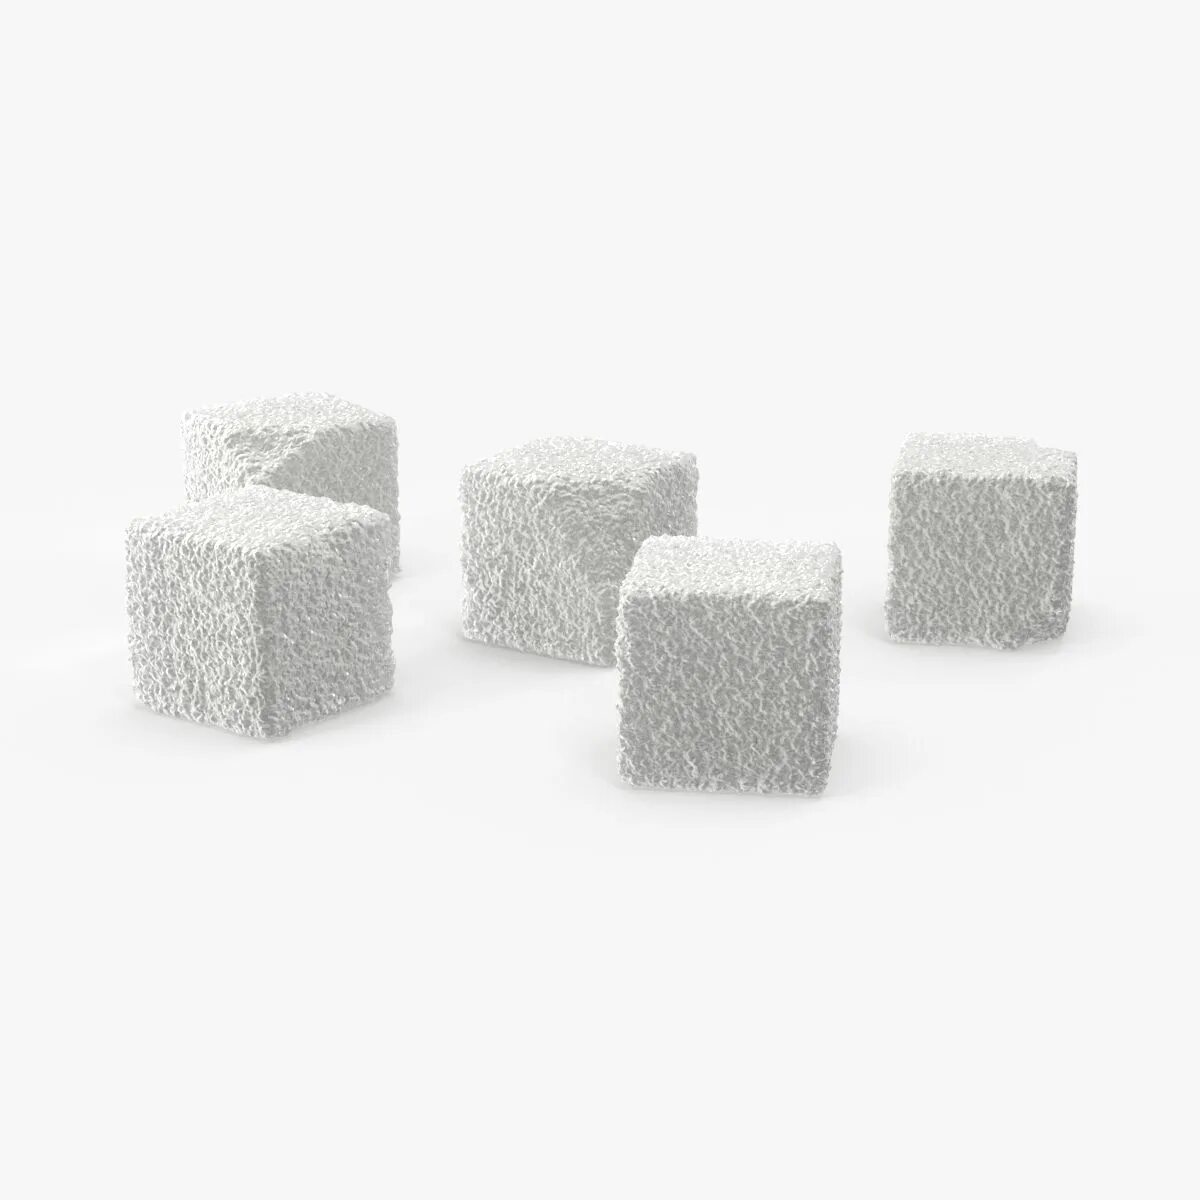 Сахар 3.3. Сахар 3д модель. Сахар в кубиках. Три кубика сахара. Кубик сахара 3 д.